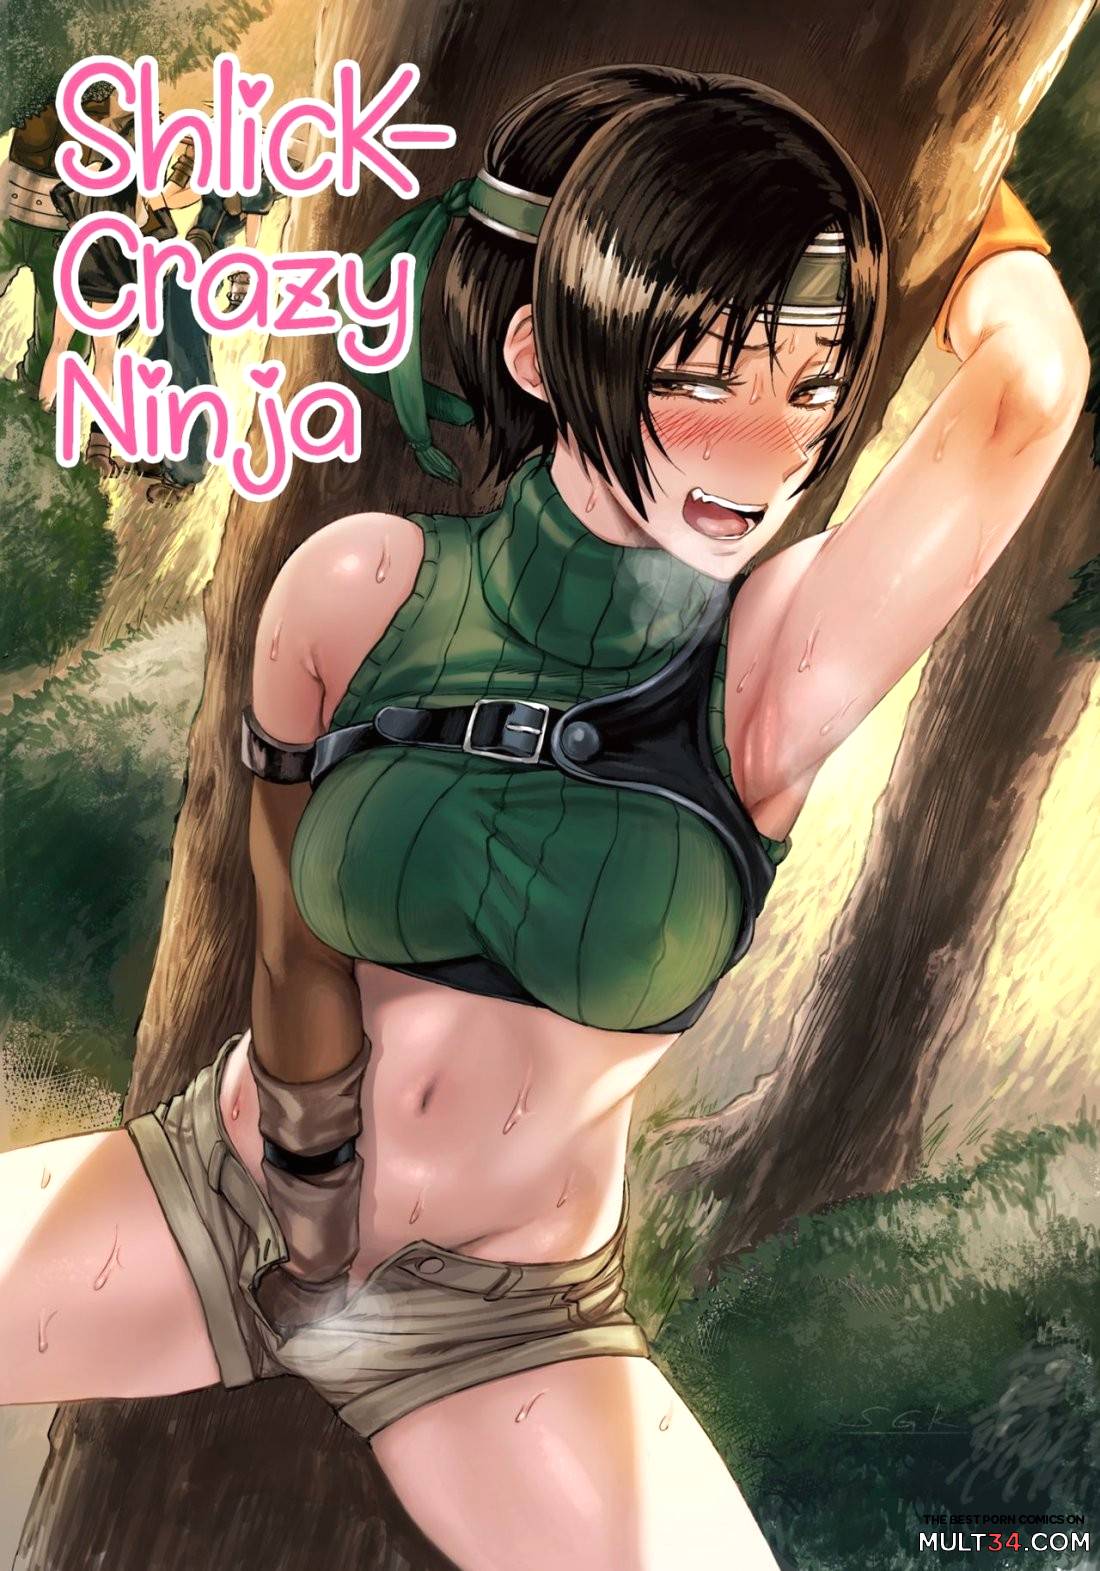 Shlick-Crazy Ninja 1 porn comic - the best cartoon porn comics, Rule 34 |  MULT34